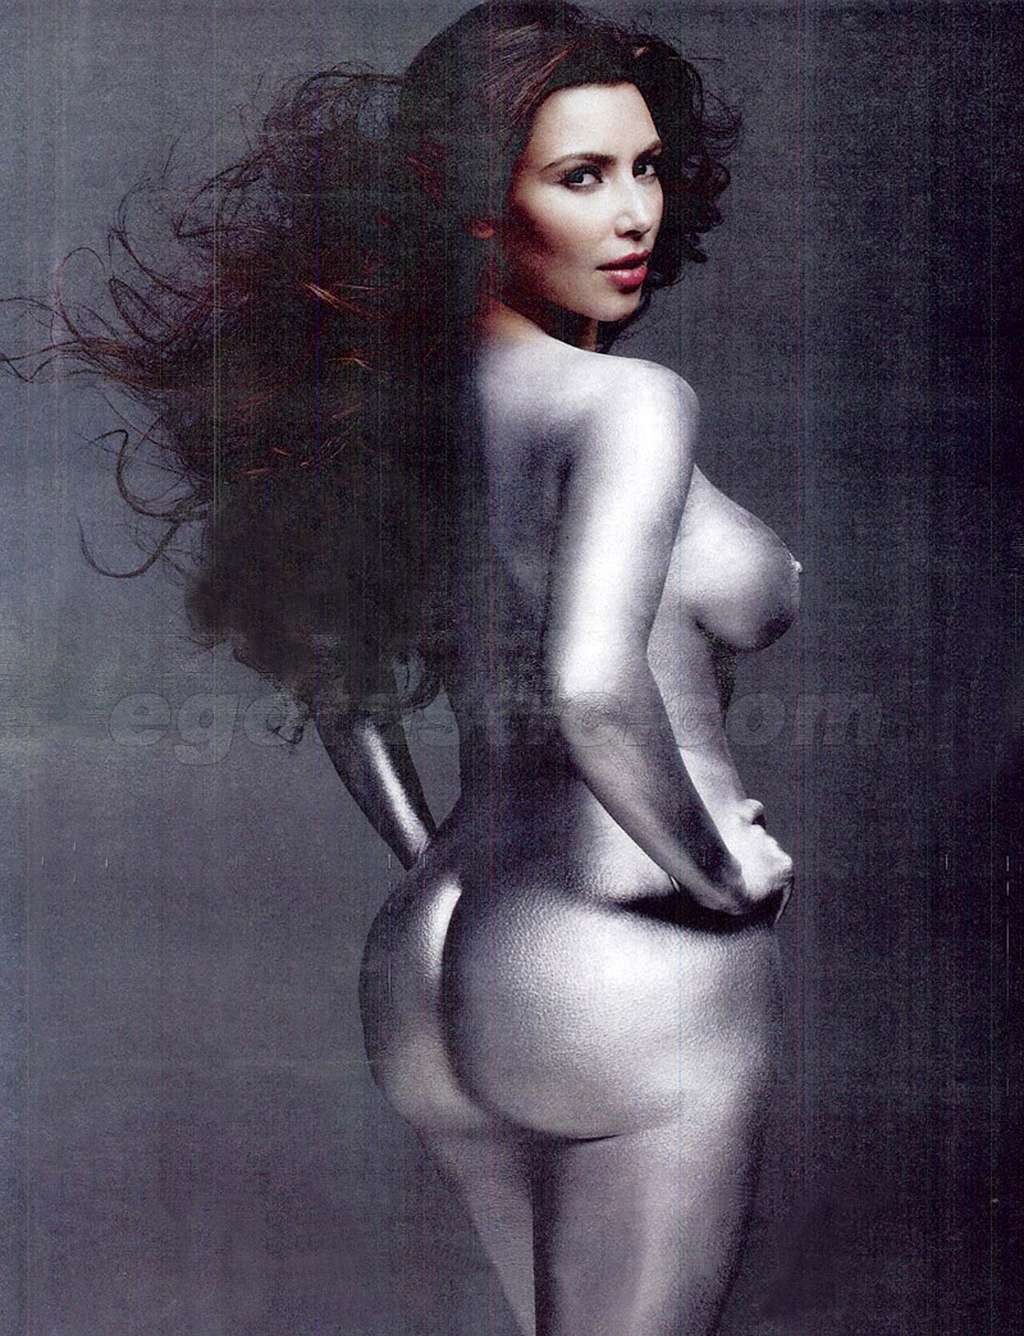 Kim Kardashian exposing her nice big boobs and flashing panties upskirt in car #75329830